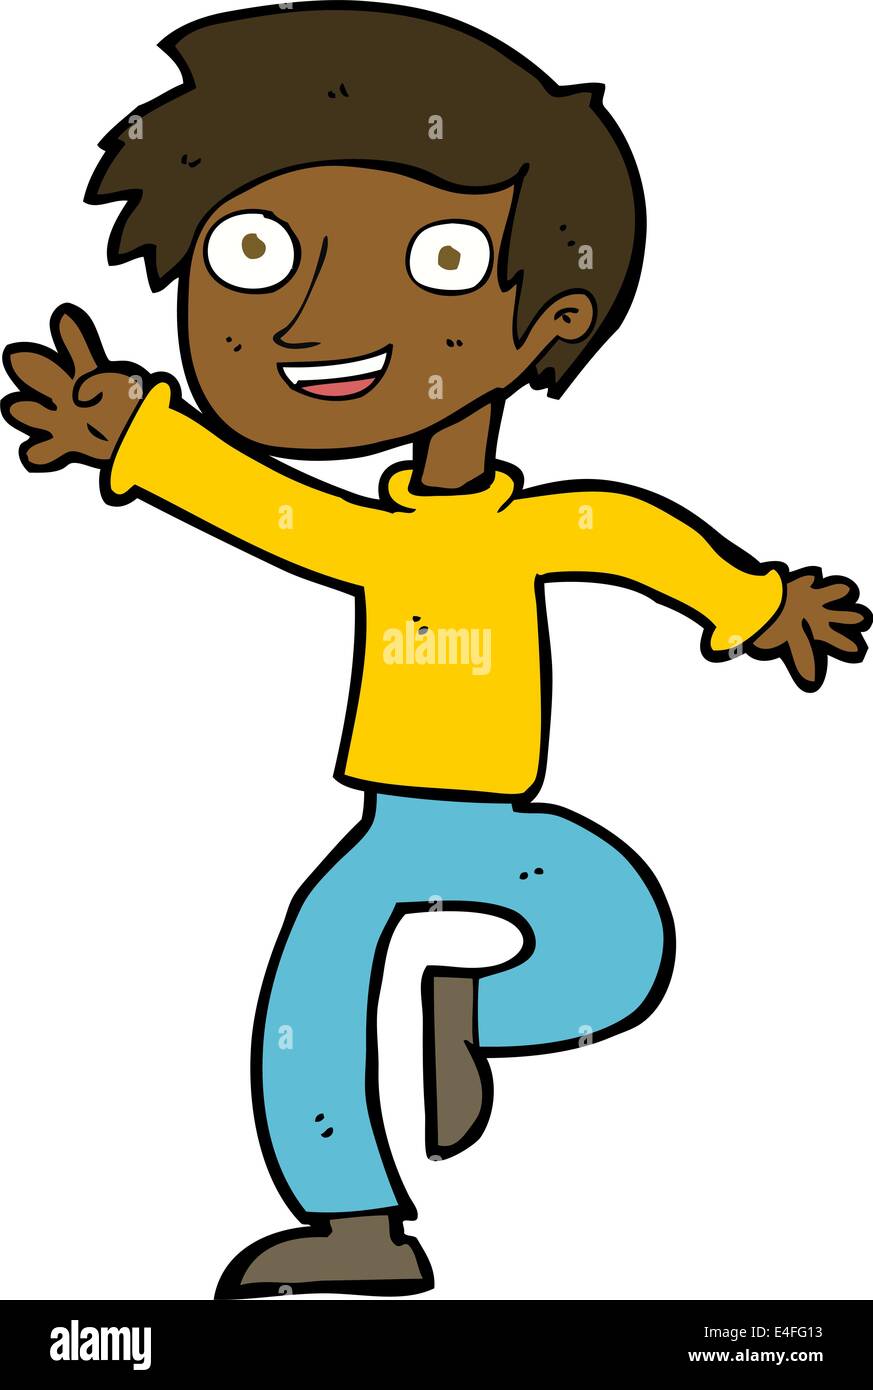 cartoon excited boy dancing Stock Vector Image & Art - Alamy